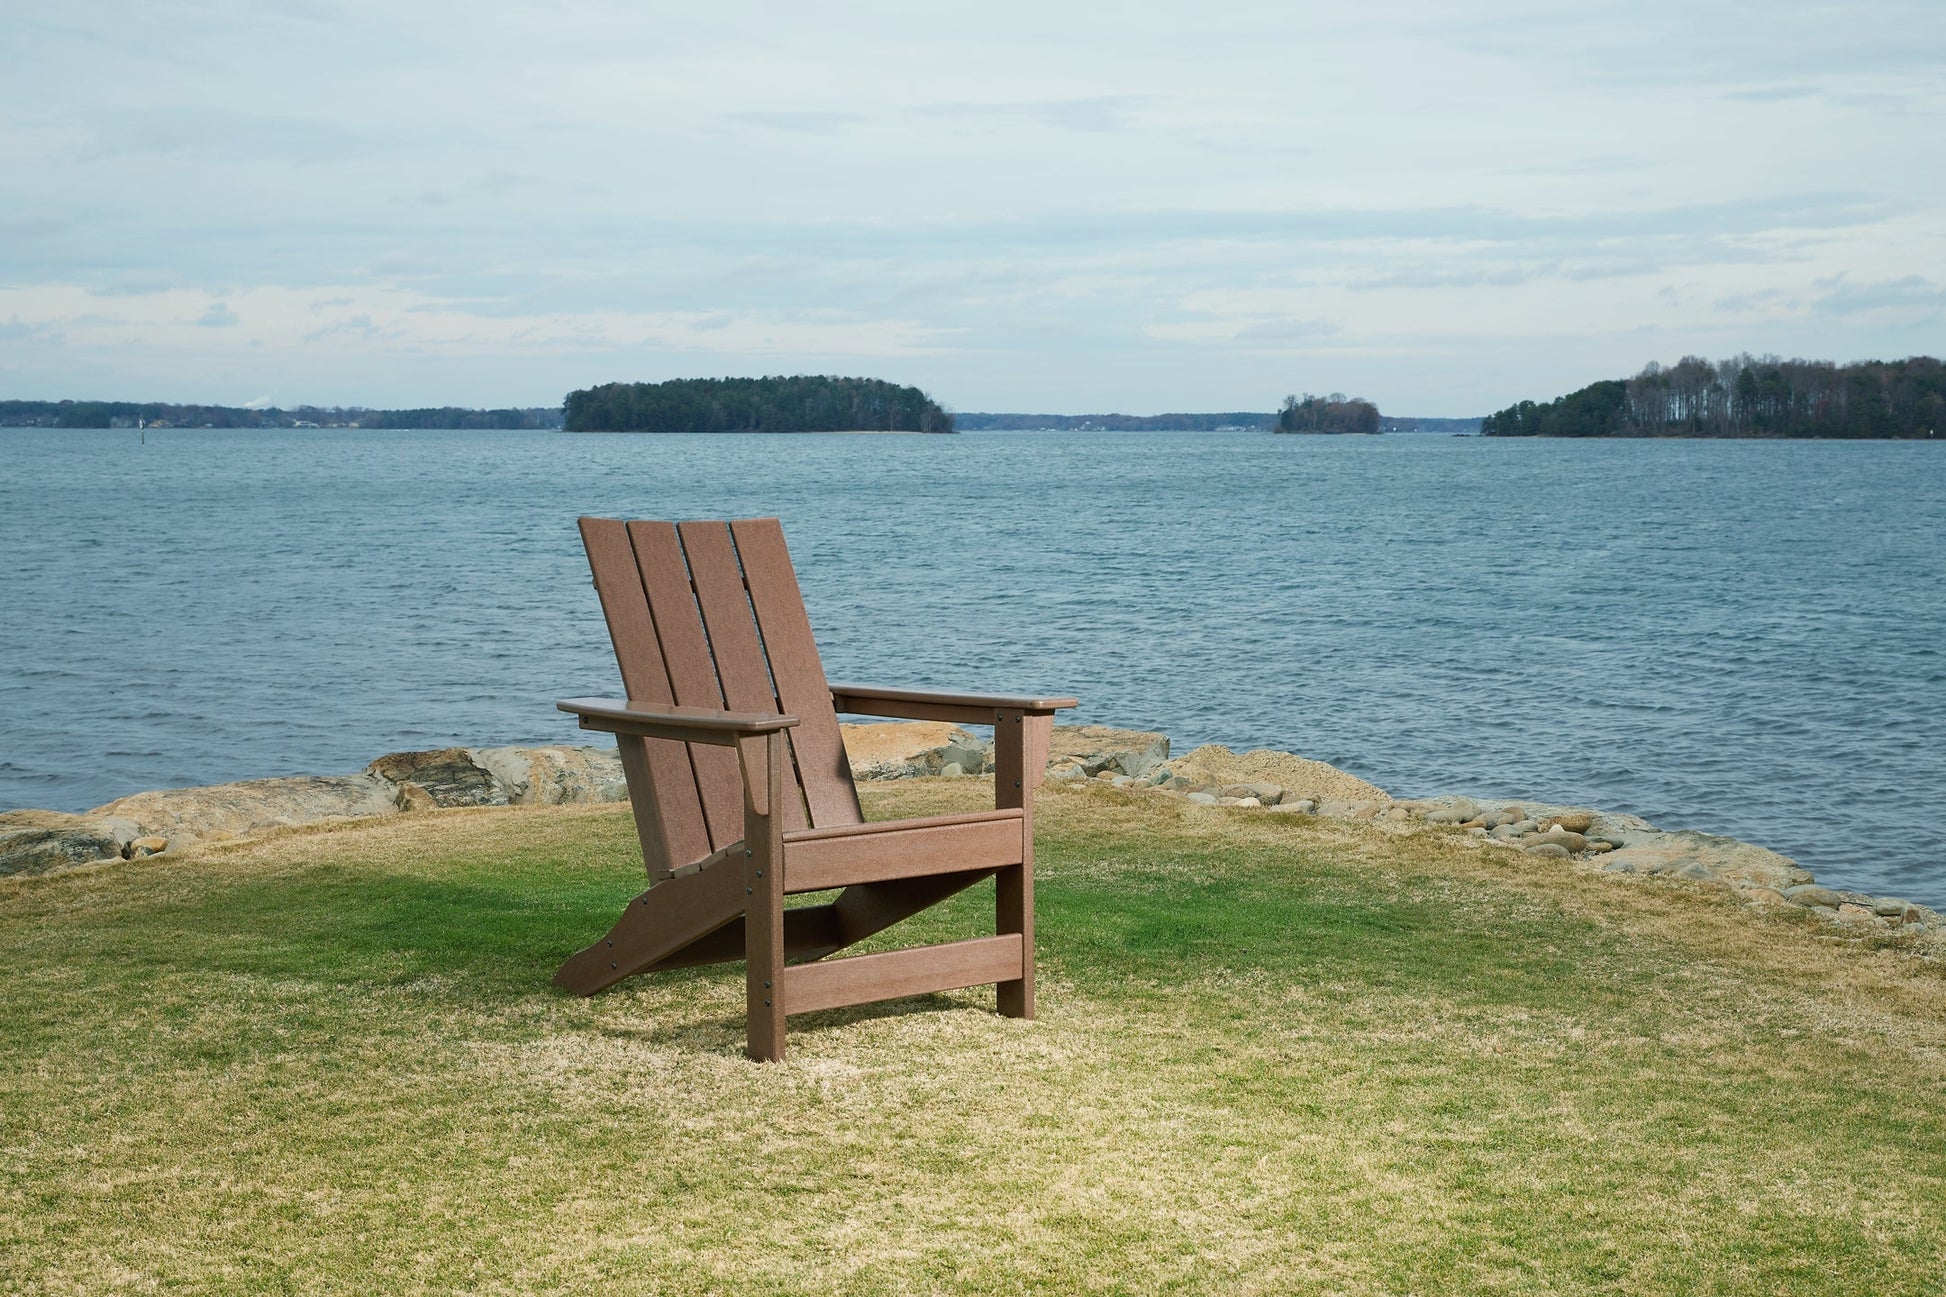 Emmeline Adirondack Chair Smyrna Furniture Outlet